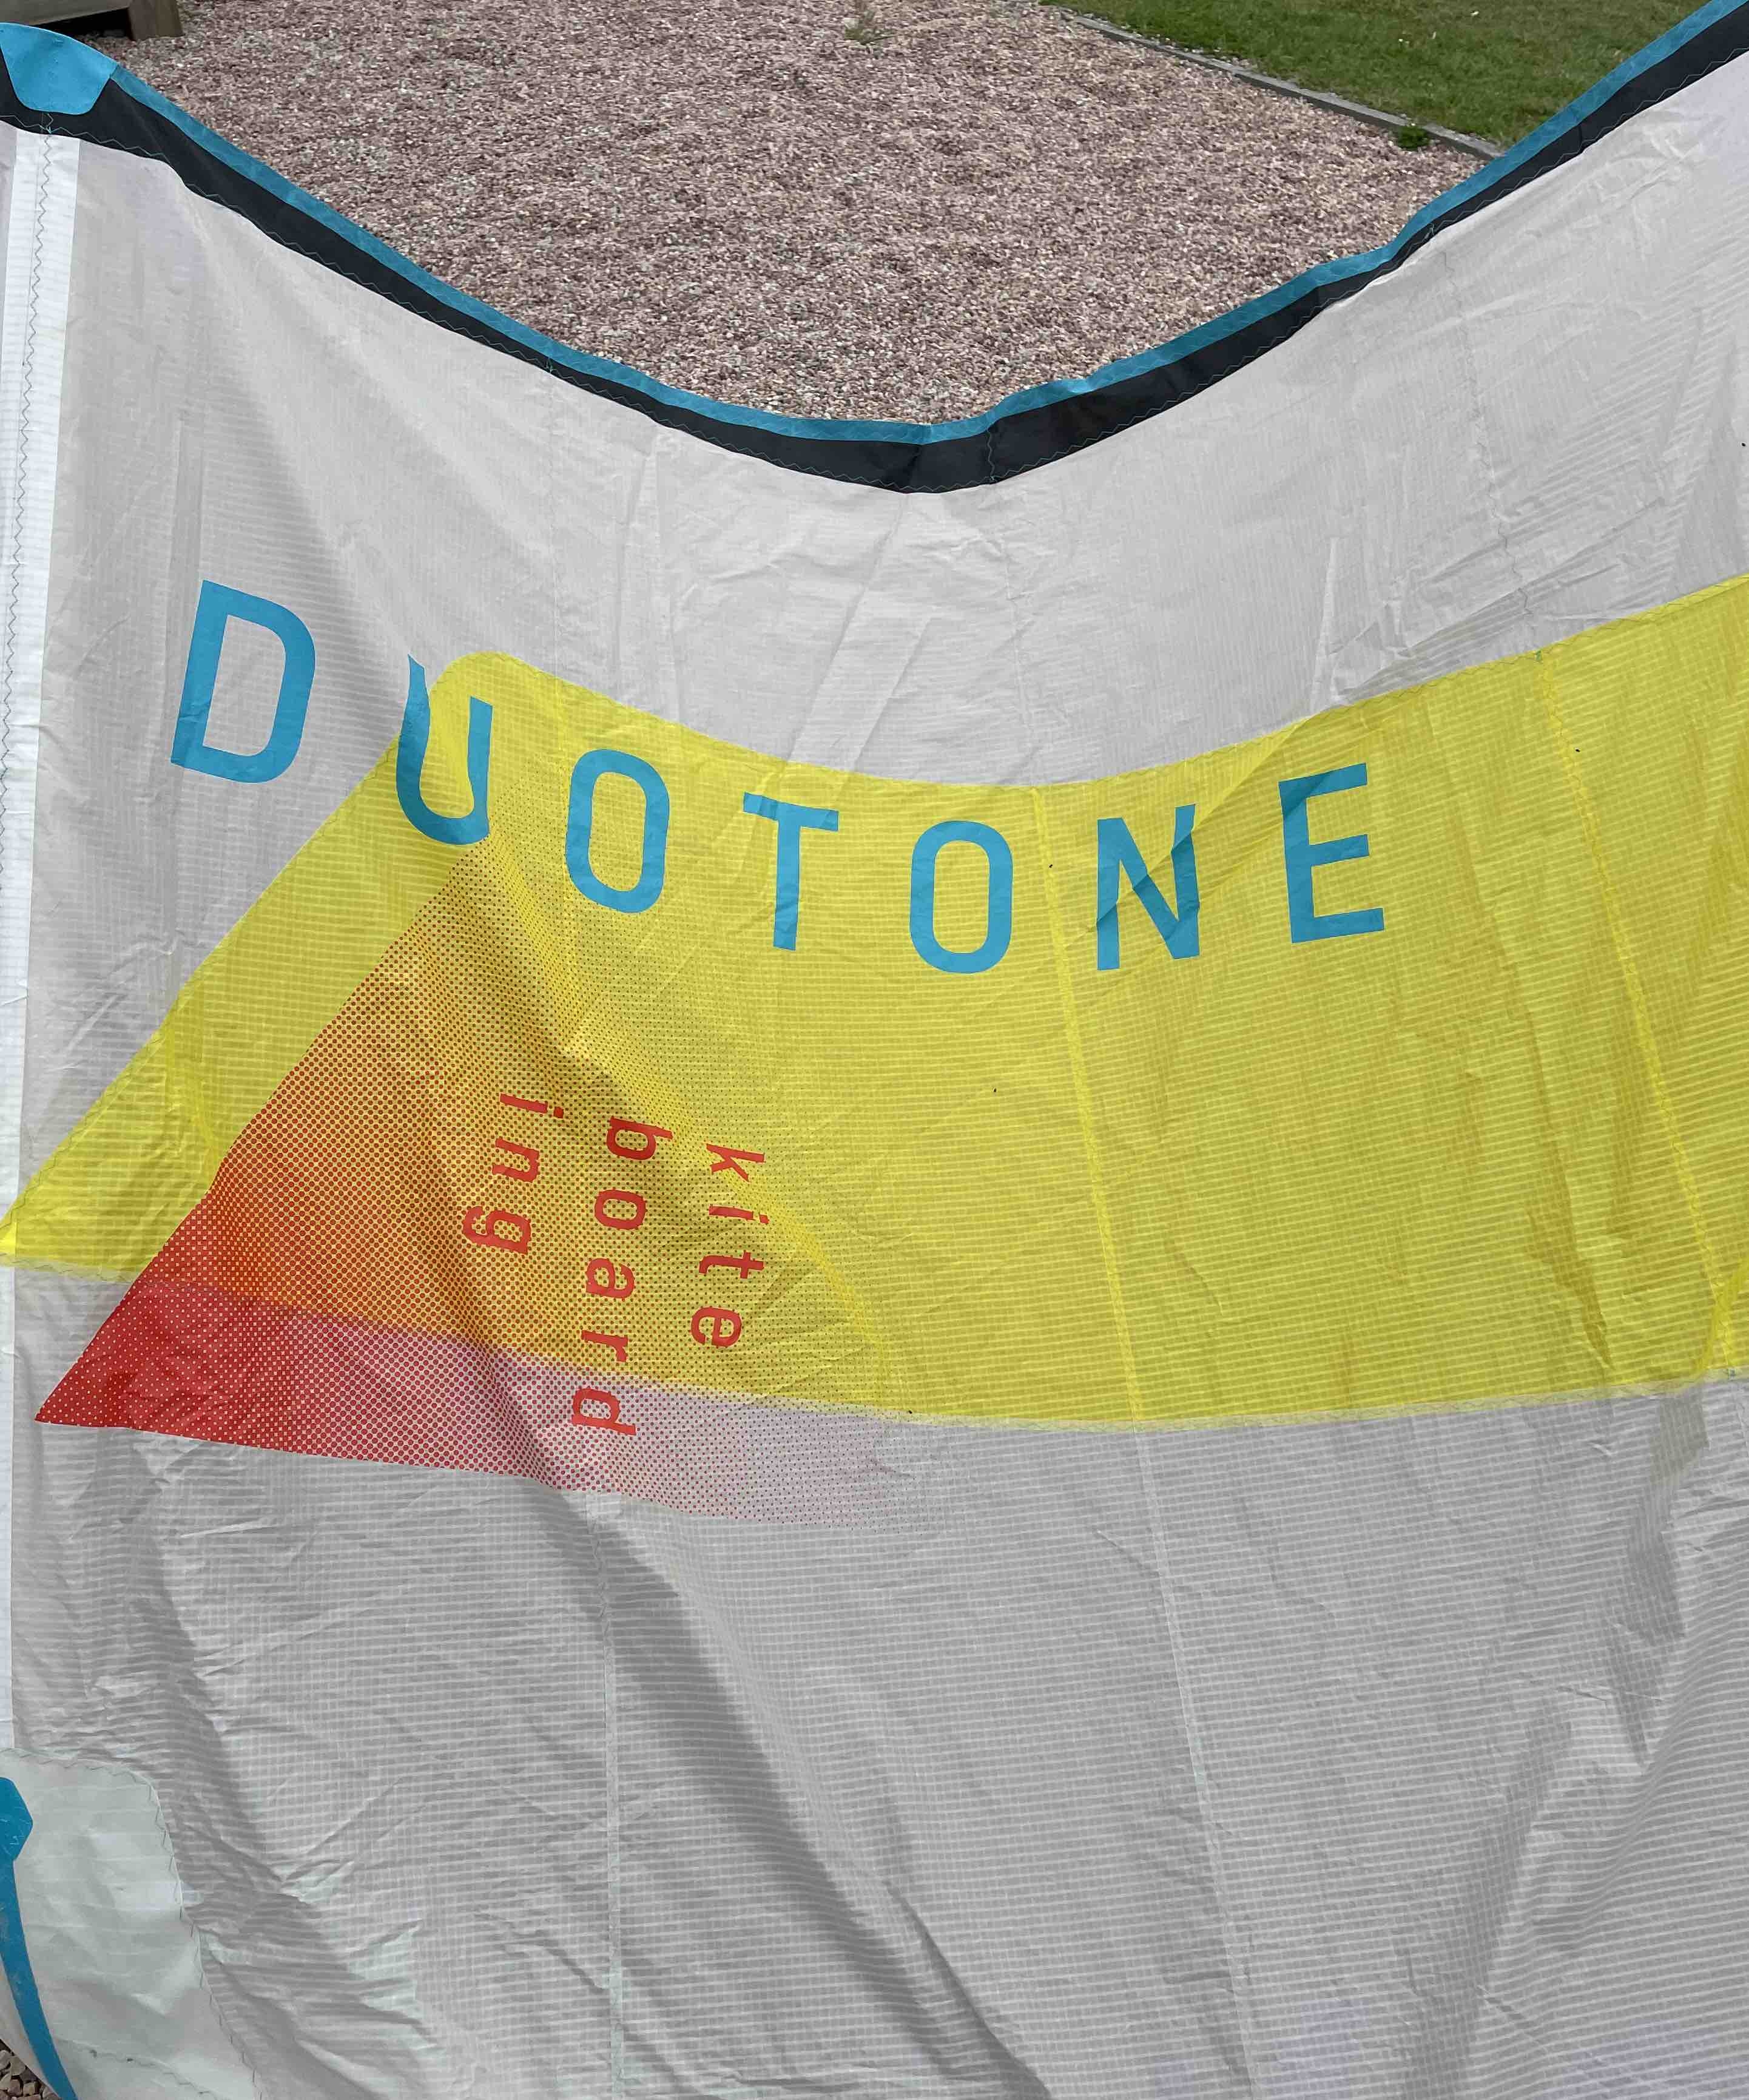 Duotone rebel 9m 2020